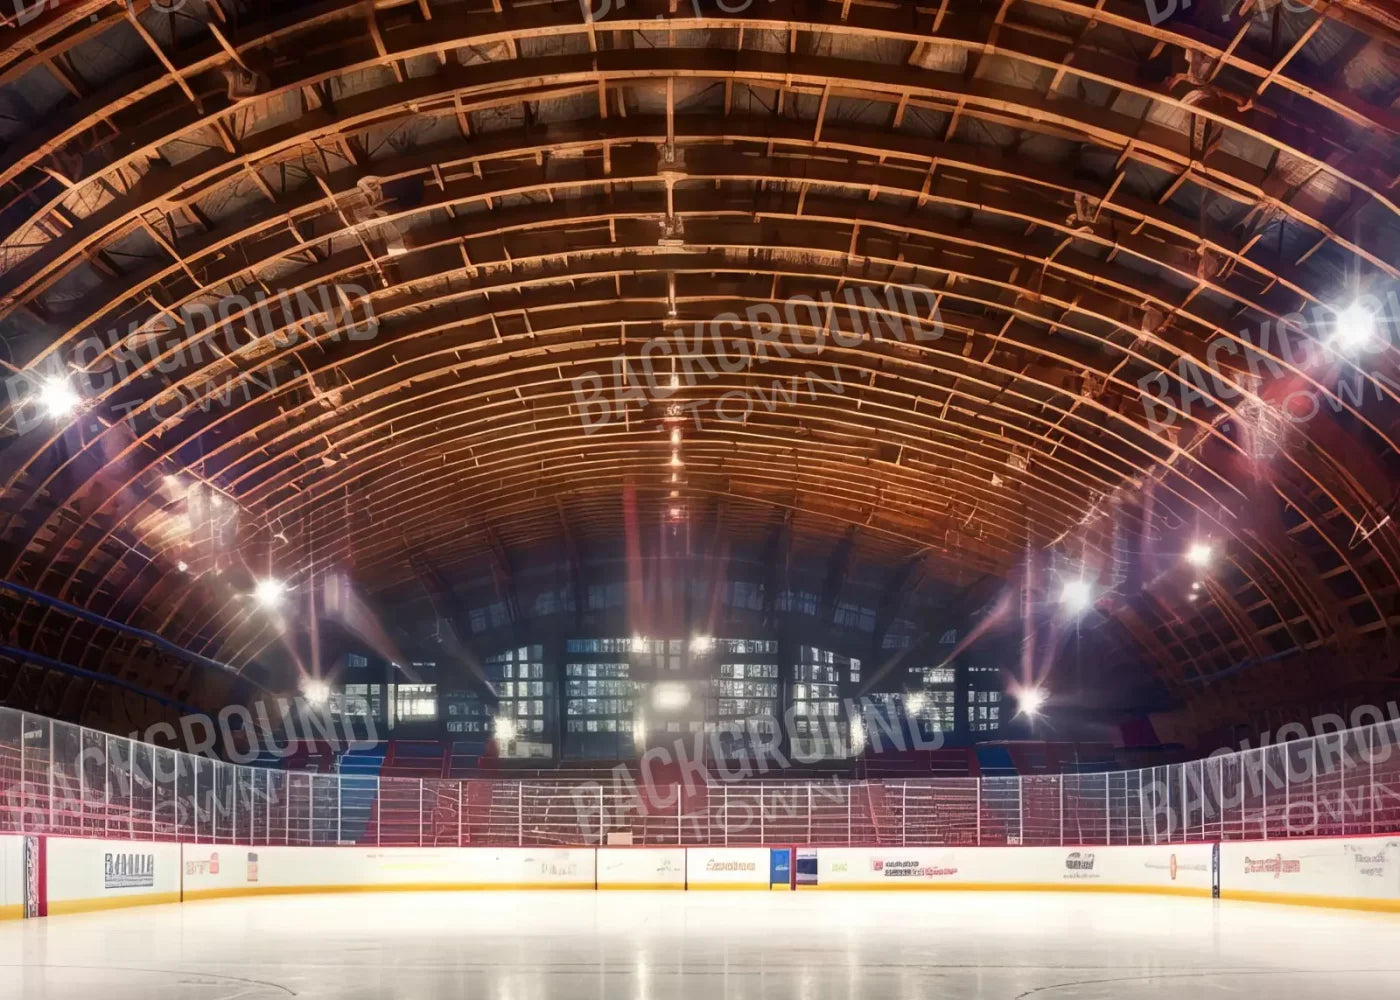 The Art Of Hockey Iii 7’X5’ Ultracloth (84 X 60 Inch) Backdrop